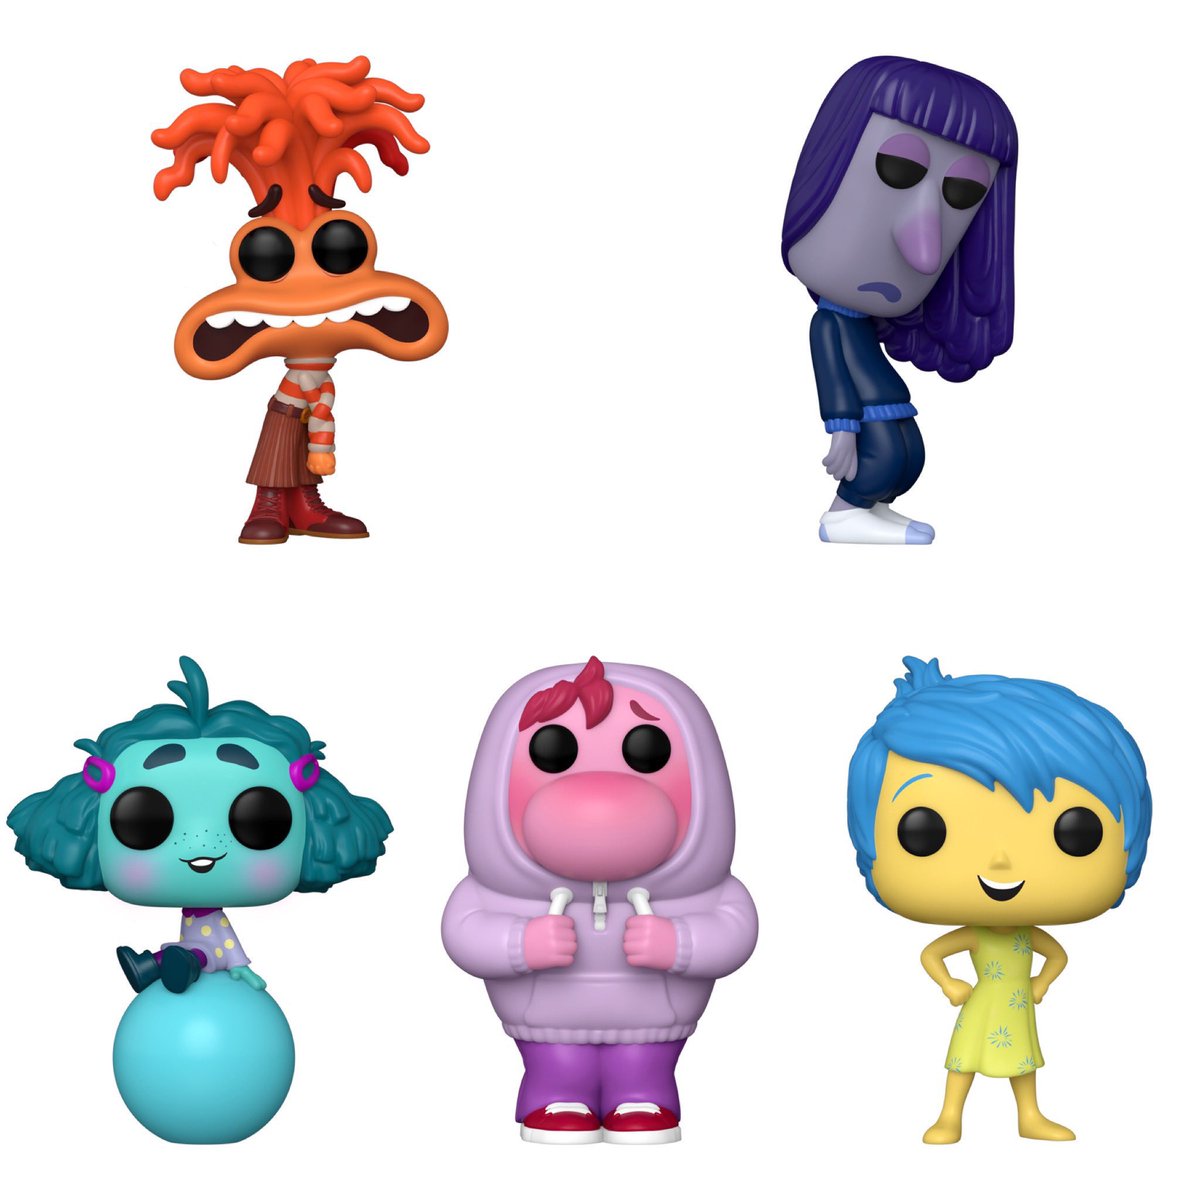 Ansiedade, Tédio, Invejo, Vergonha e Alegria formam a coleção Funko Pop! de ‘Divertida Mente 2’, da Pixar.